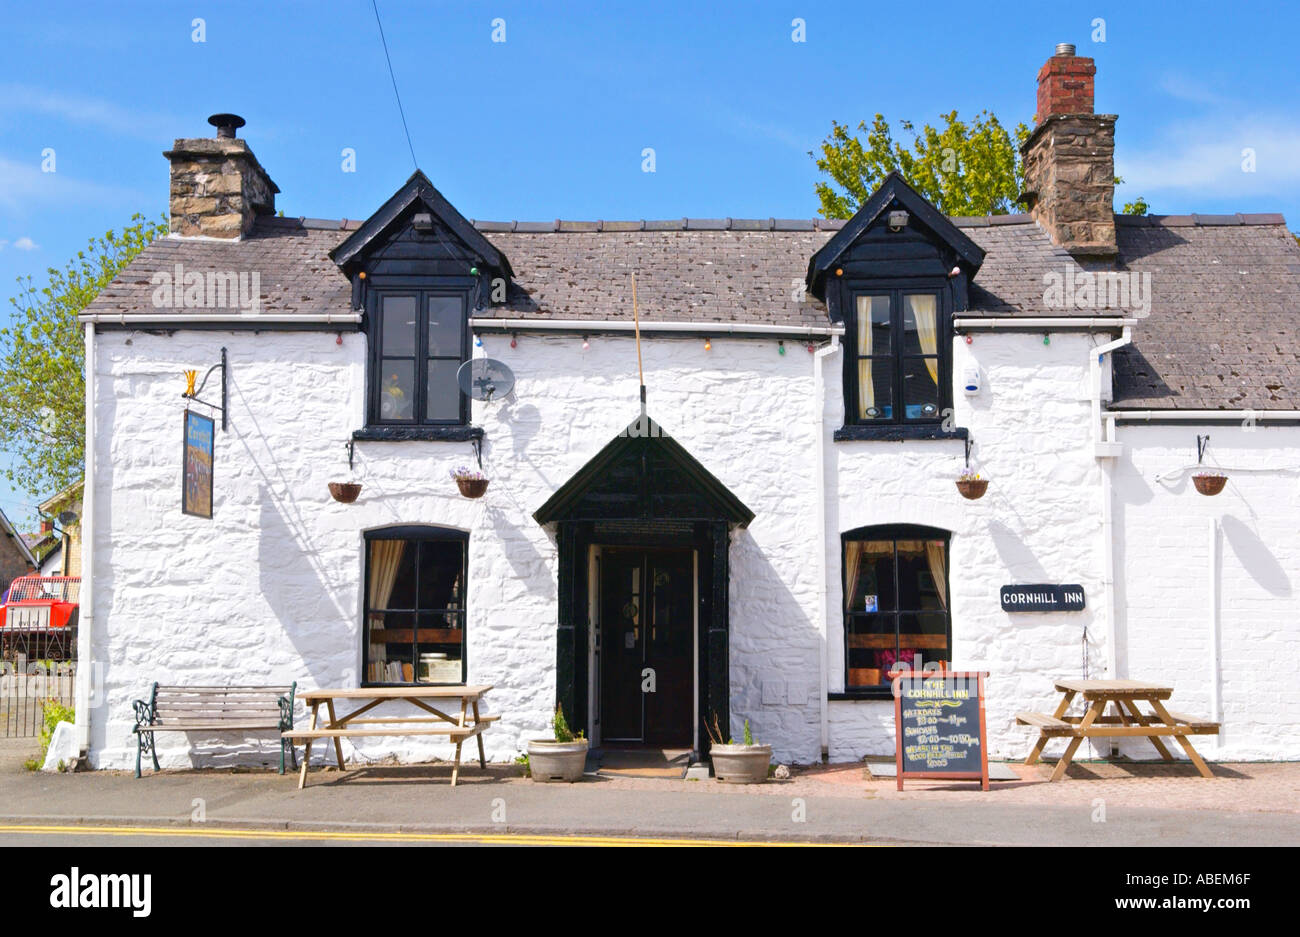 Cornhill Inn at Rhayader Powys Mid Wales UK Stock Photo